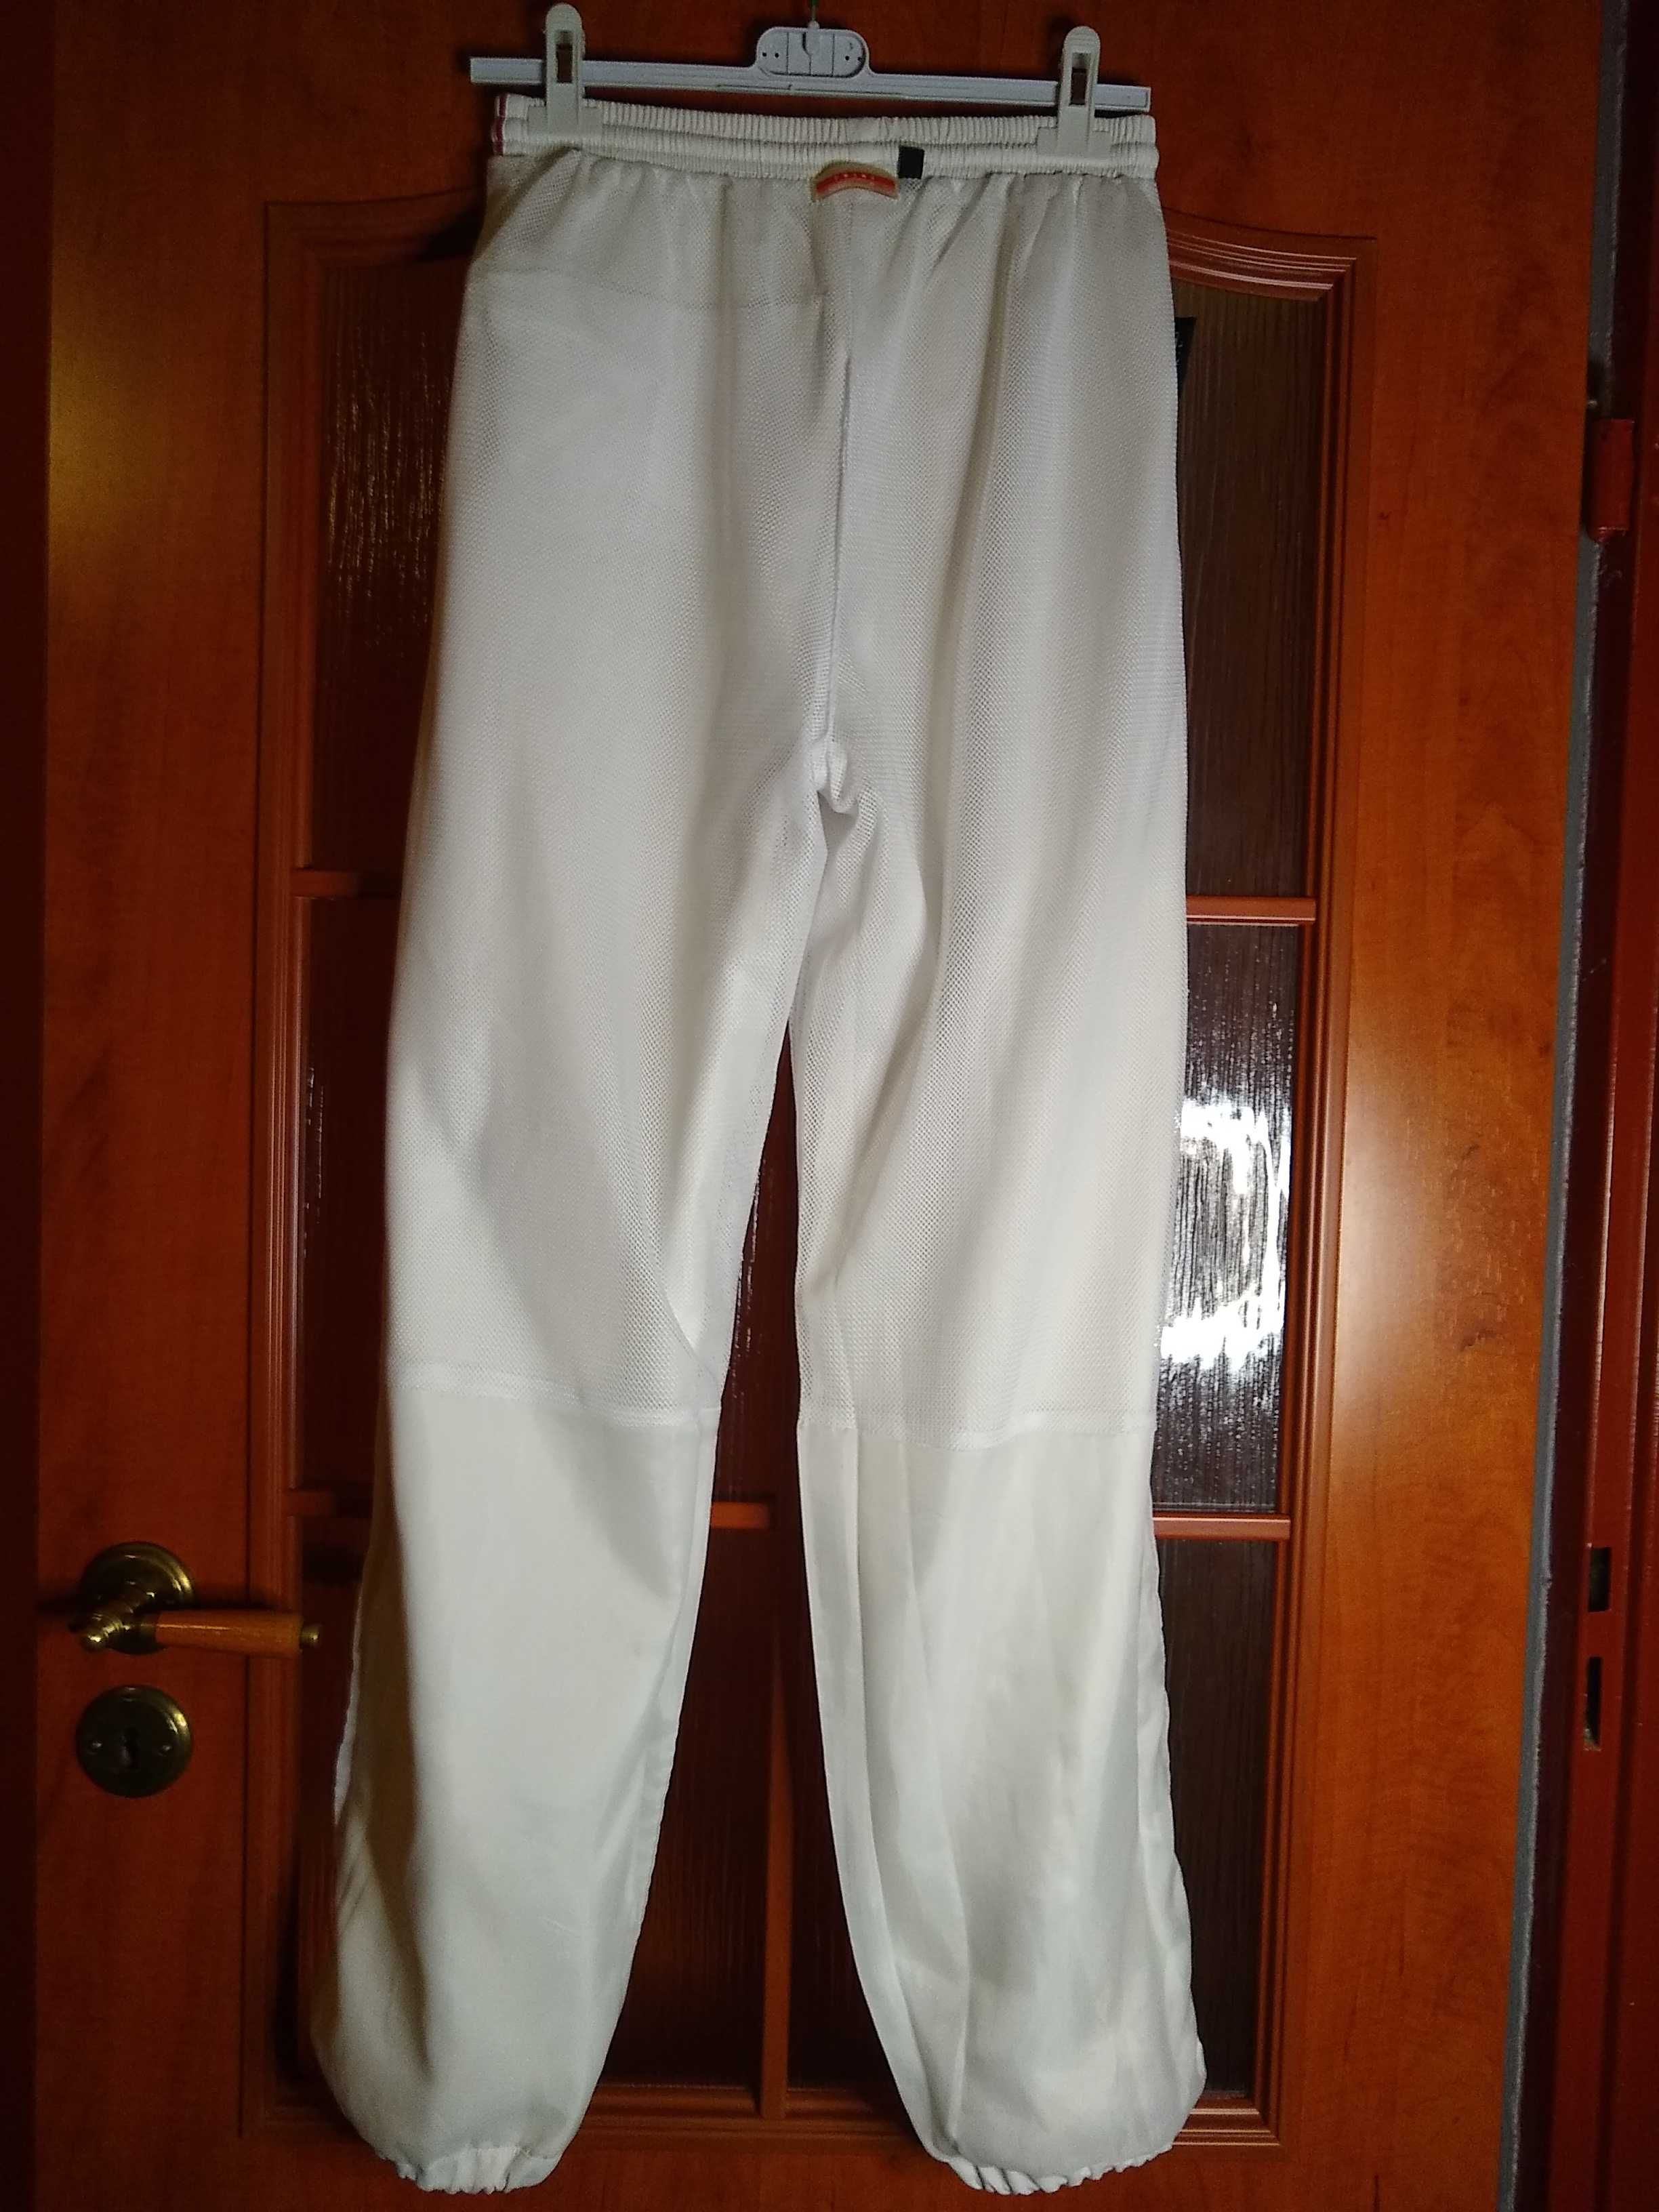 NOWE  Damskie białe spodnie sportowe z siateczkową podszewką,  L-XL